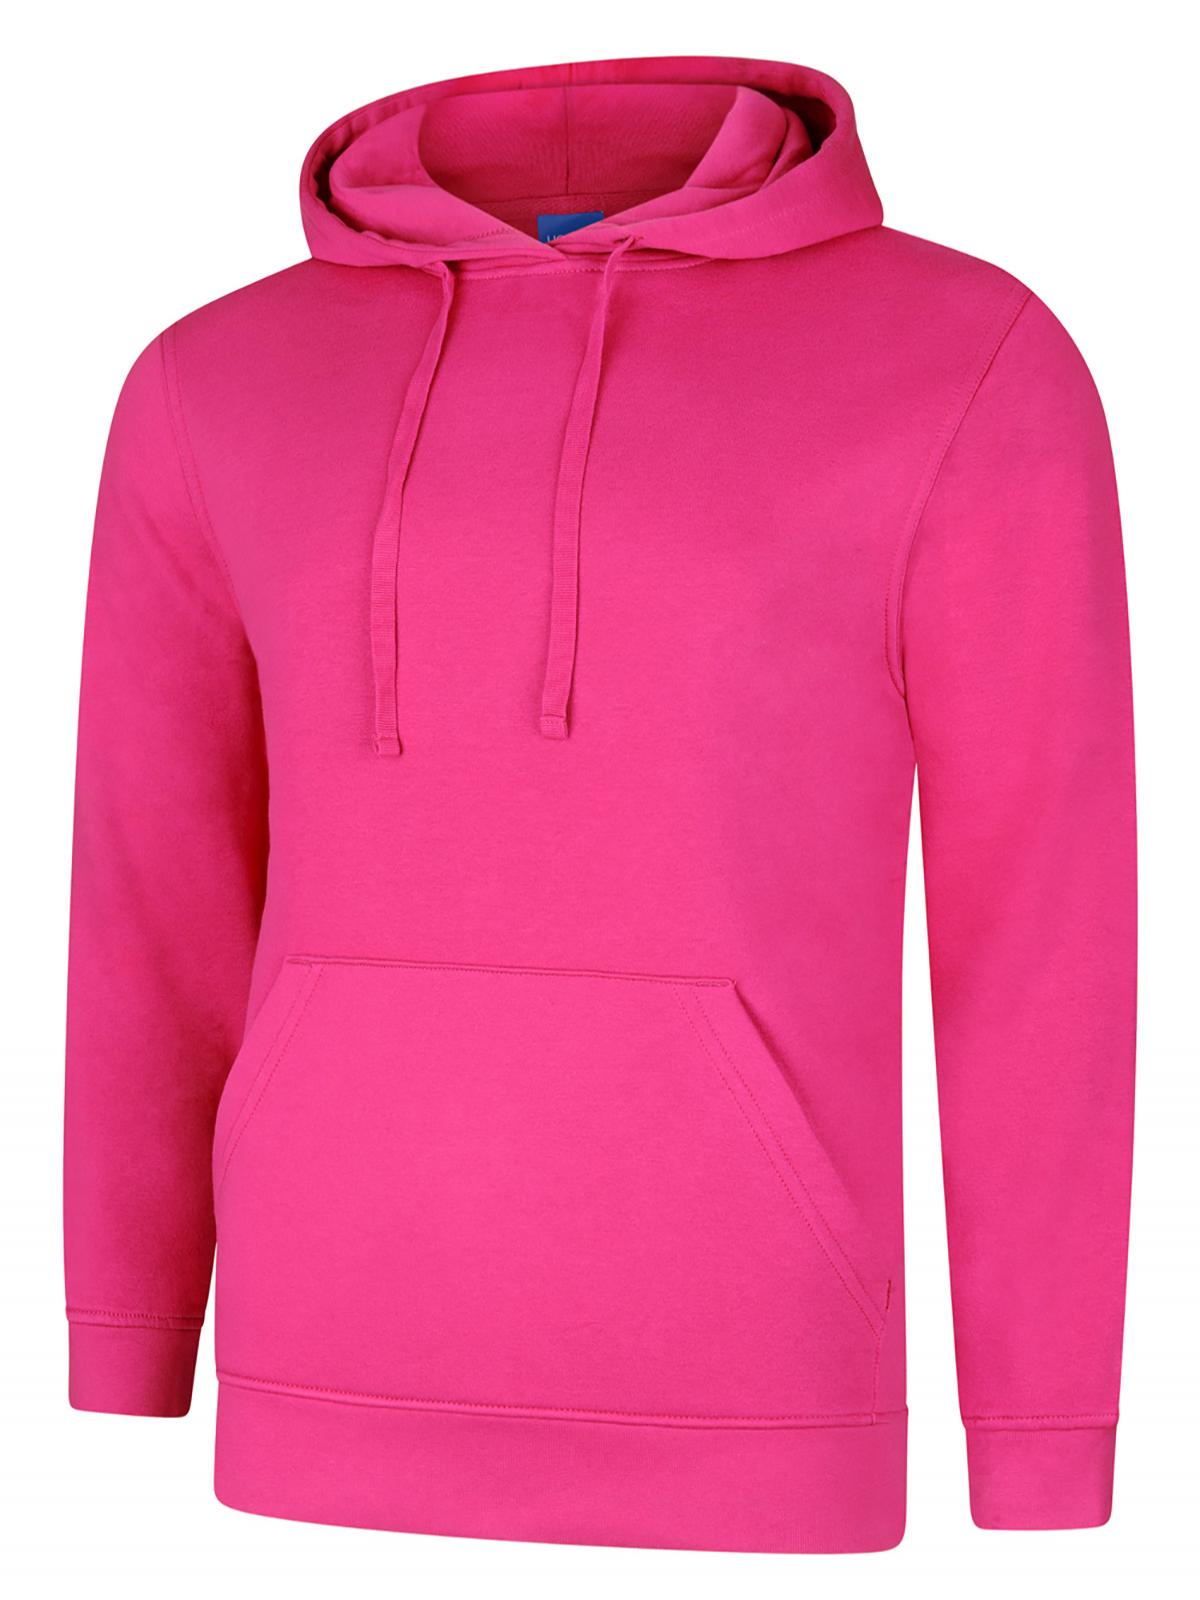 Uneek Deluxe Hooded Sweatshirt UC509 - Hot Pink